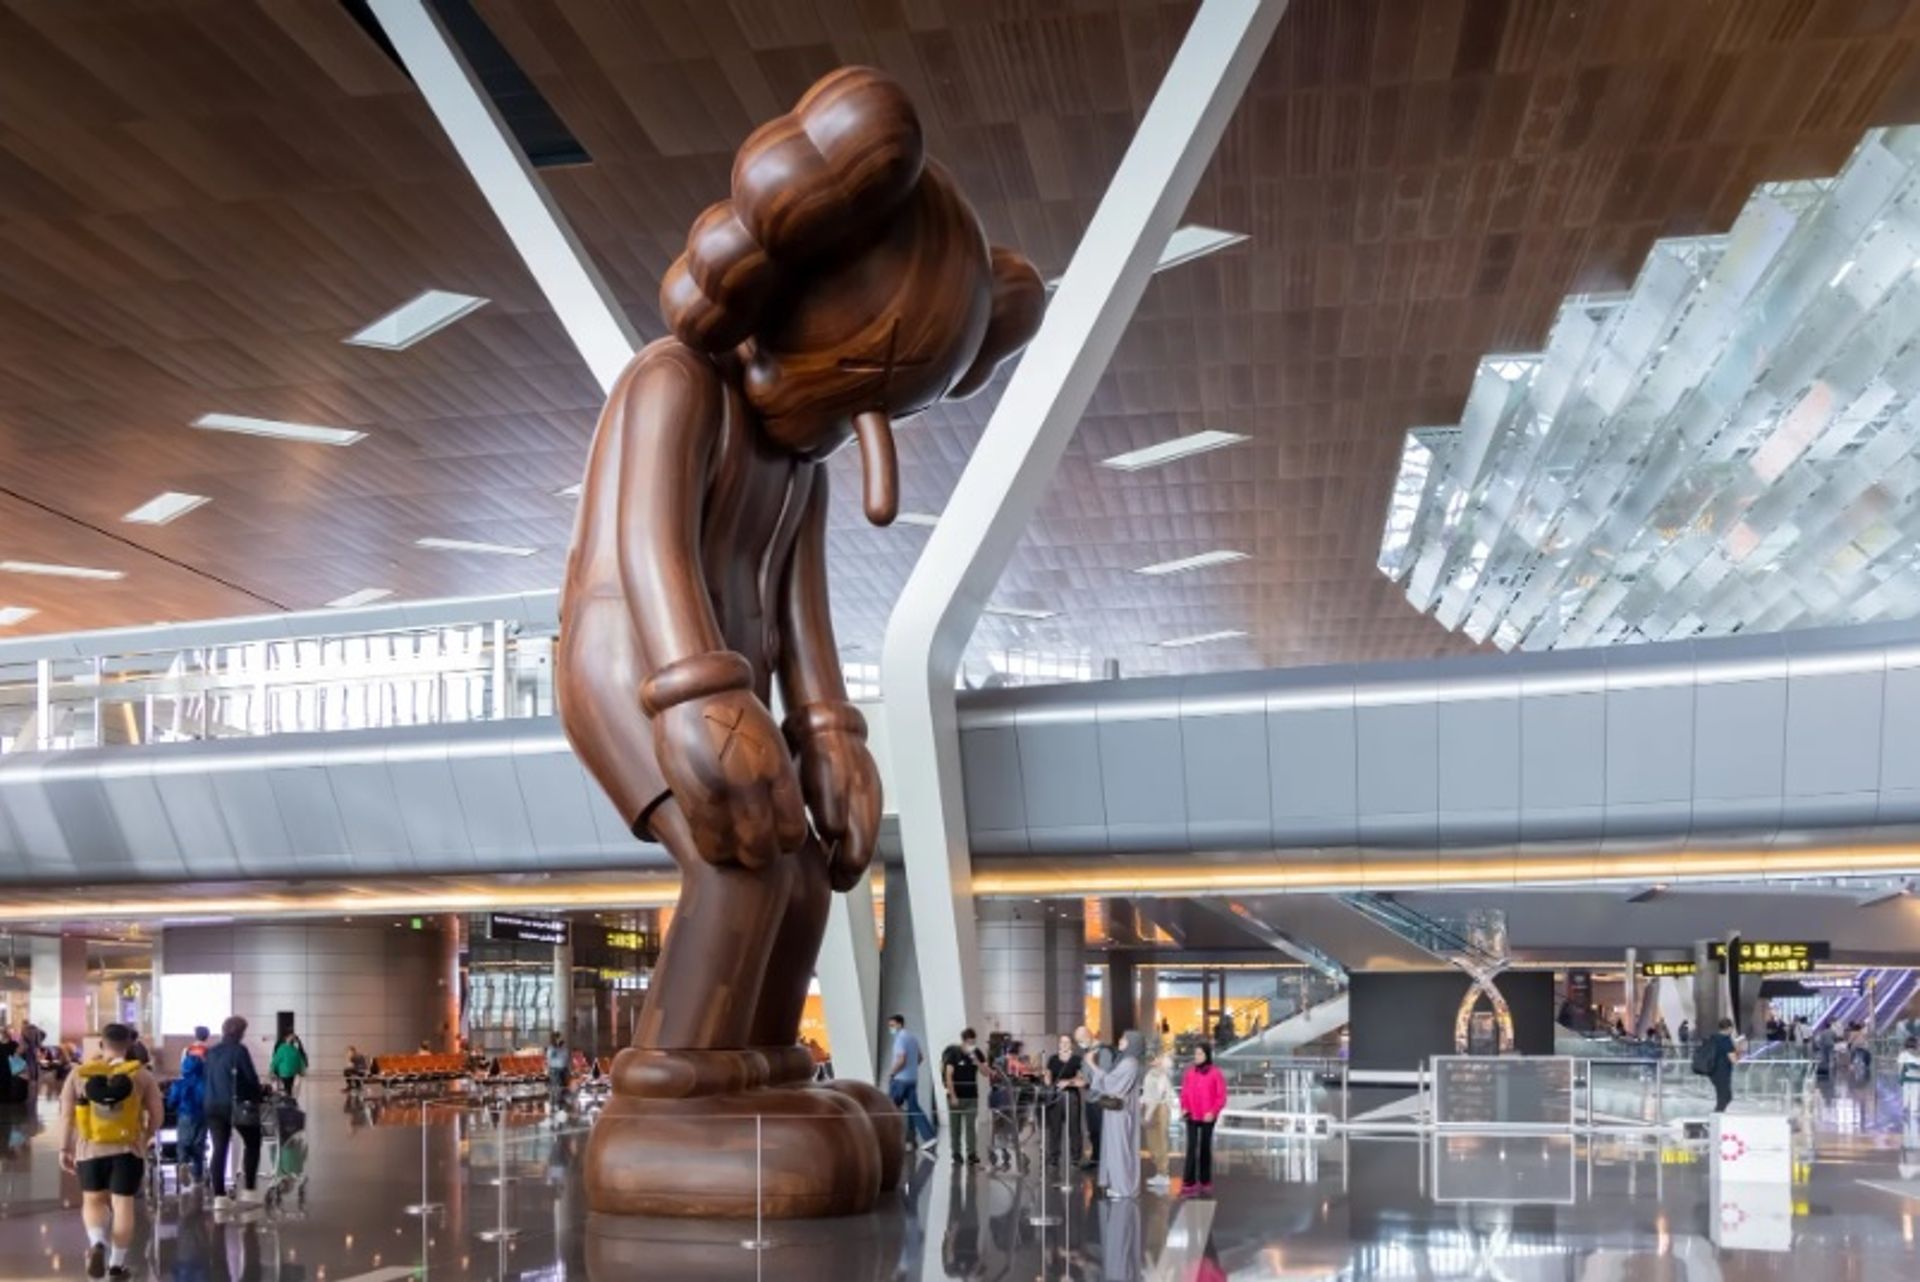 ה- (2018) SMALL LIE של KAWS בנמל התעופה הבינלאומי חמד

צילום: איוואן באן; באדיבות מוזיאוני קטאר